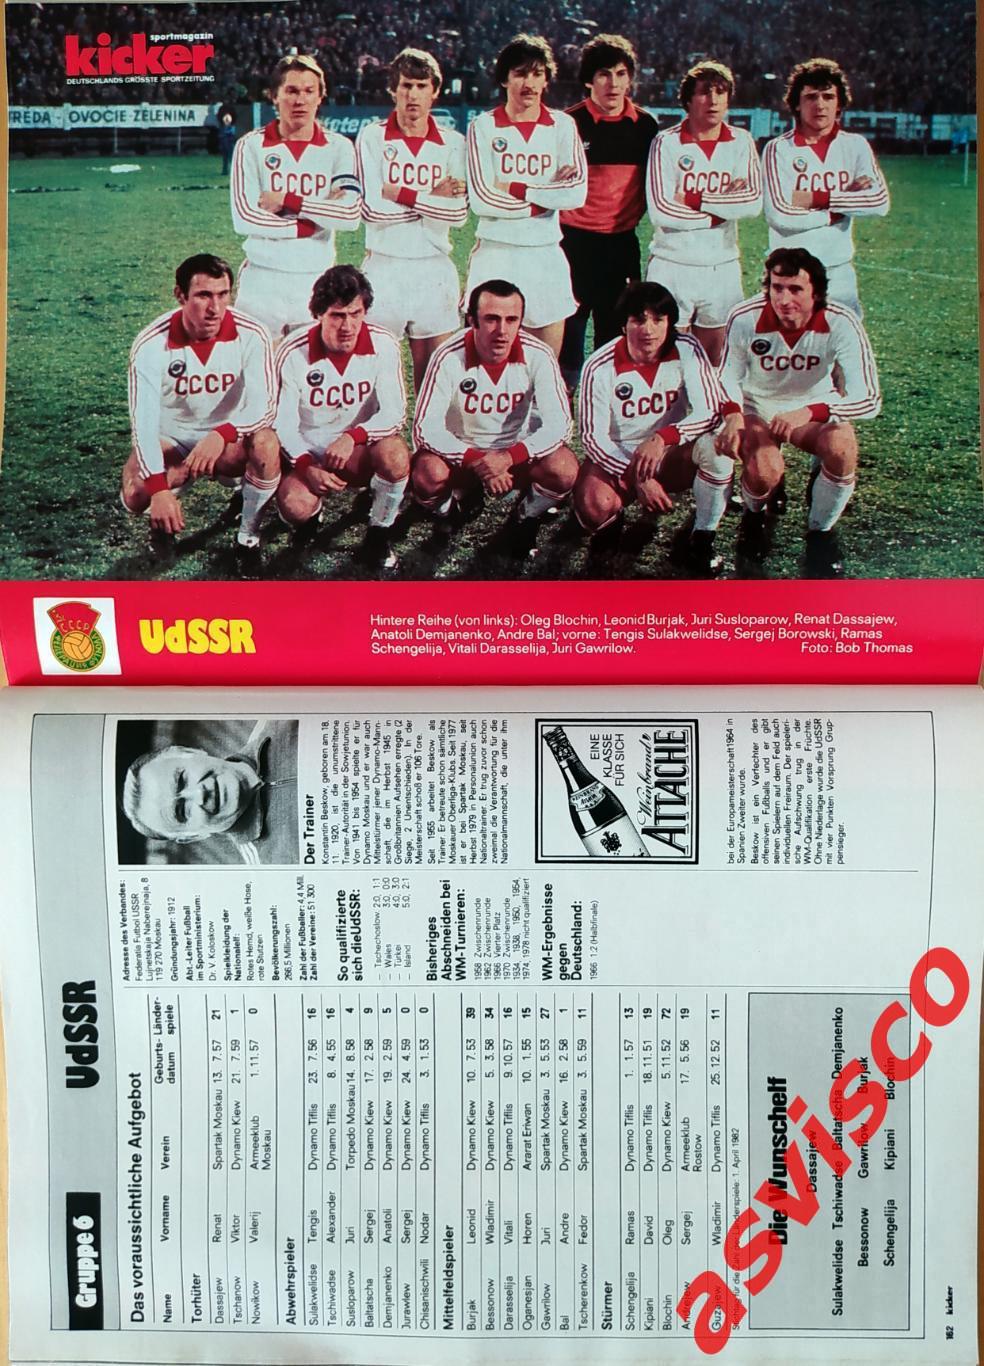 Чемпионат Мира по футболу в Испании 1982 года. Представление команд. 7